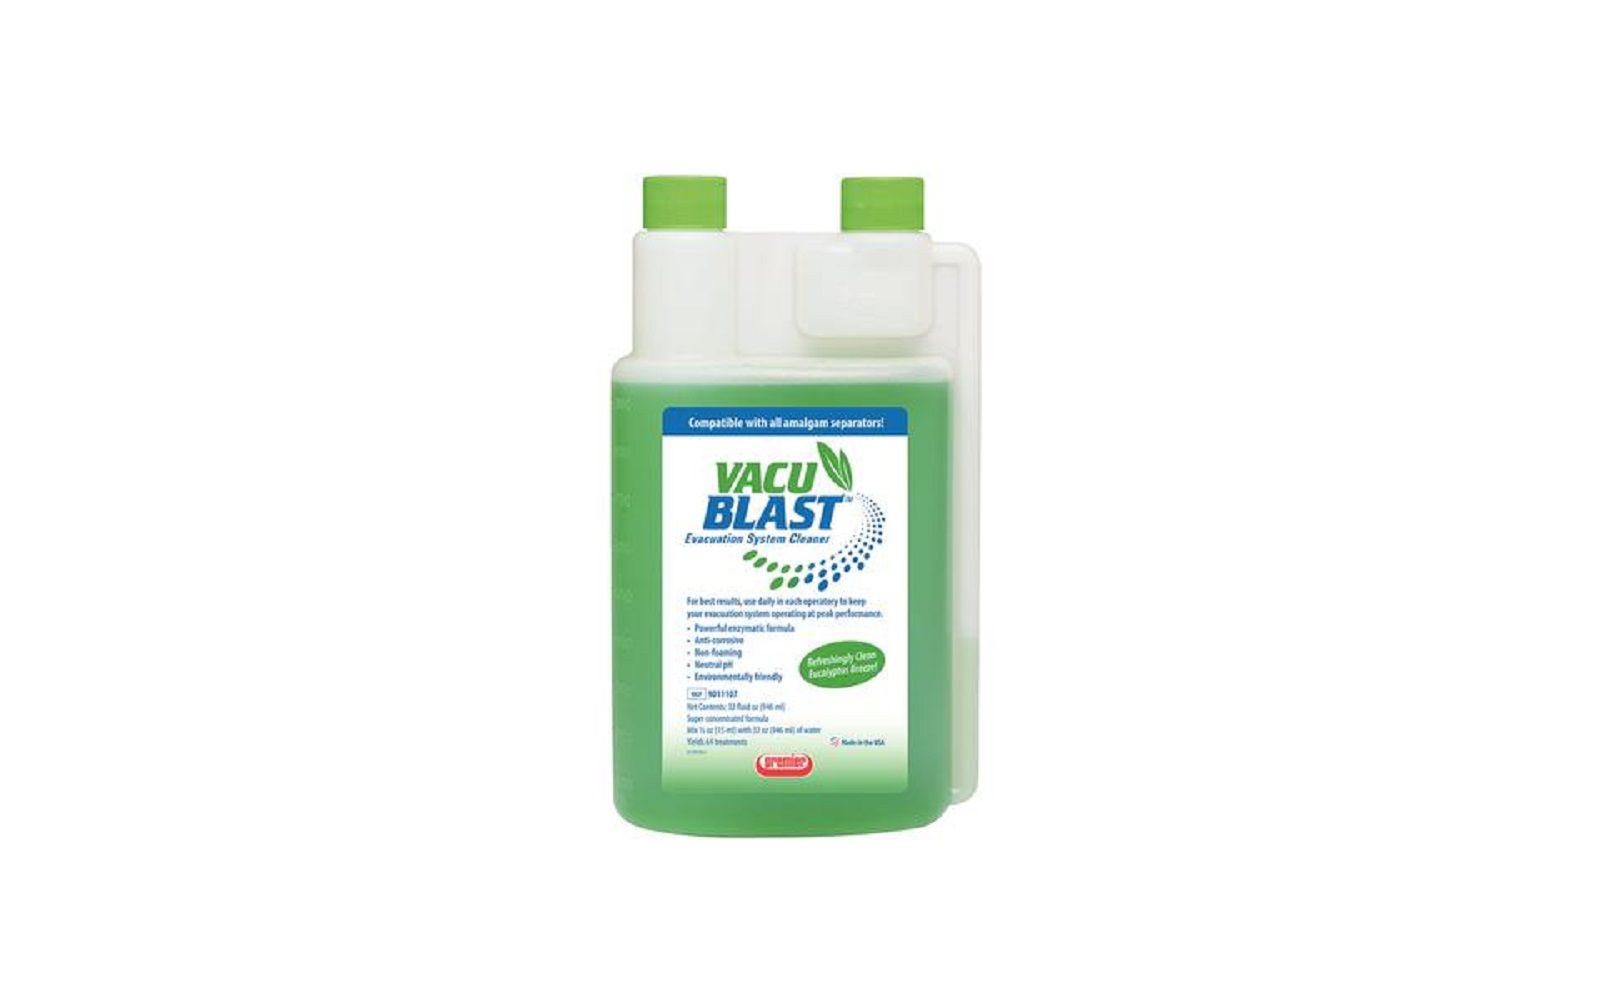 Vacu blast™ liquid evacuation system cleaner, 32 oz